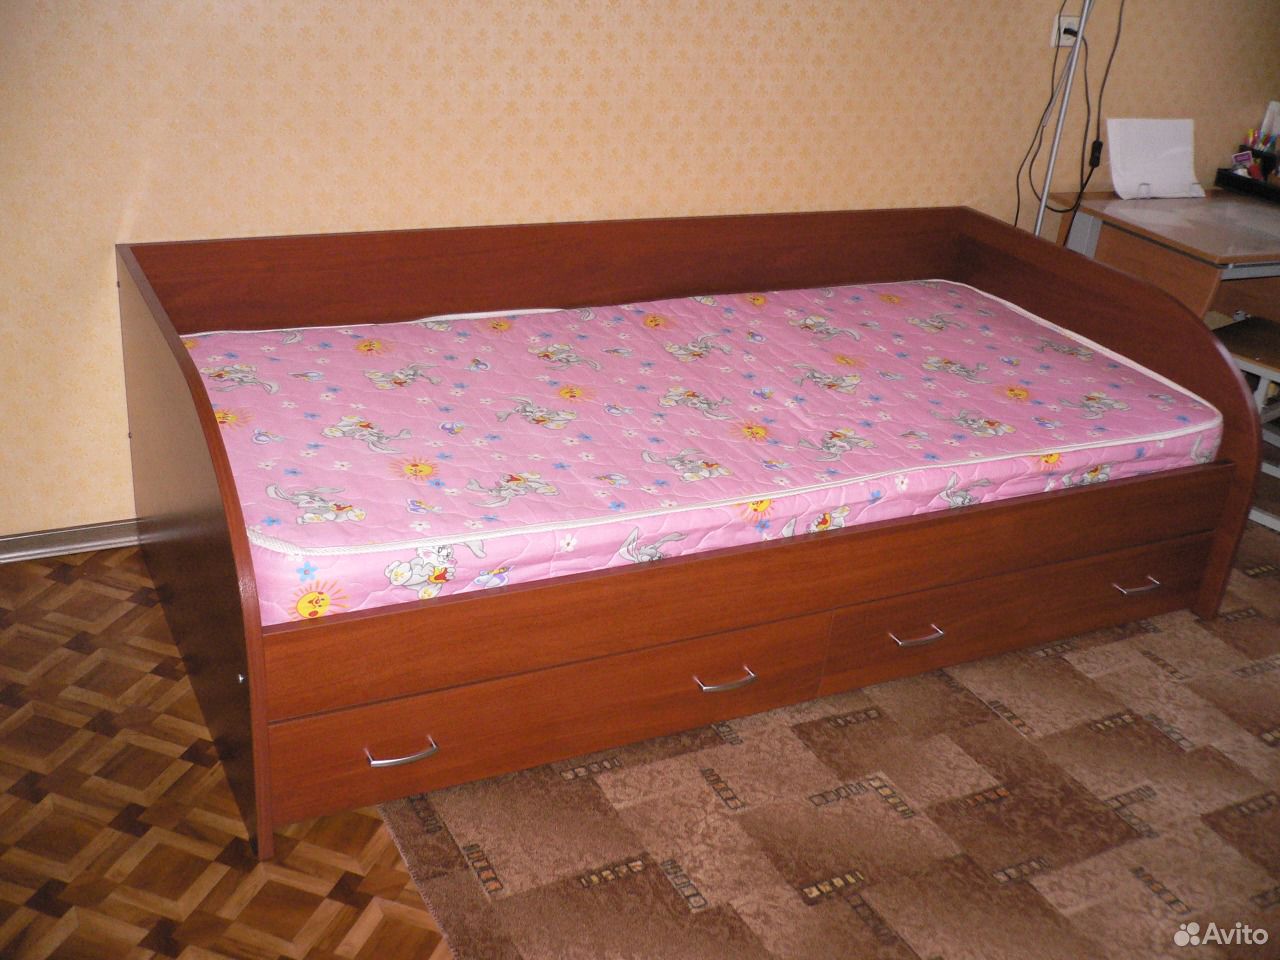 Авито постели. Кровать полуторка с матрасом и ящиками. Кровать полуторка с бортиками. Детская кровать полуторка с бортиками. Кровать полуторка с подъемом к стене.